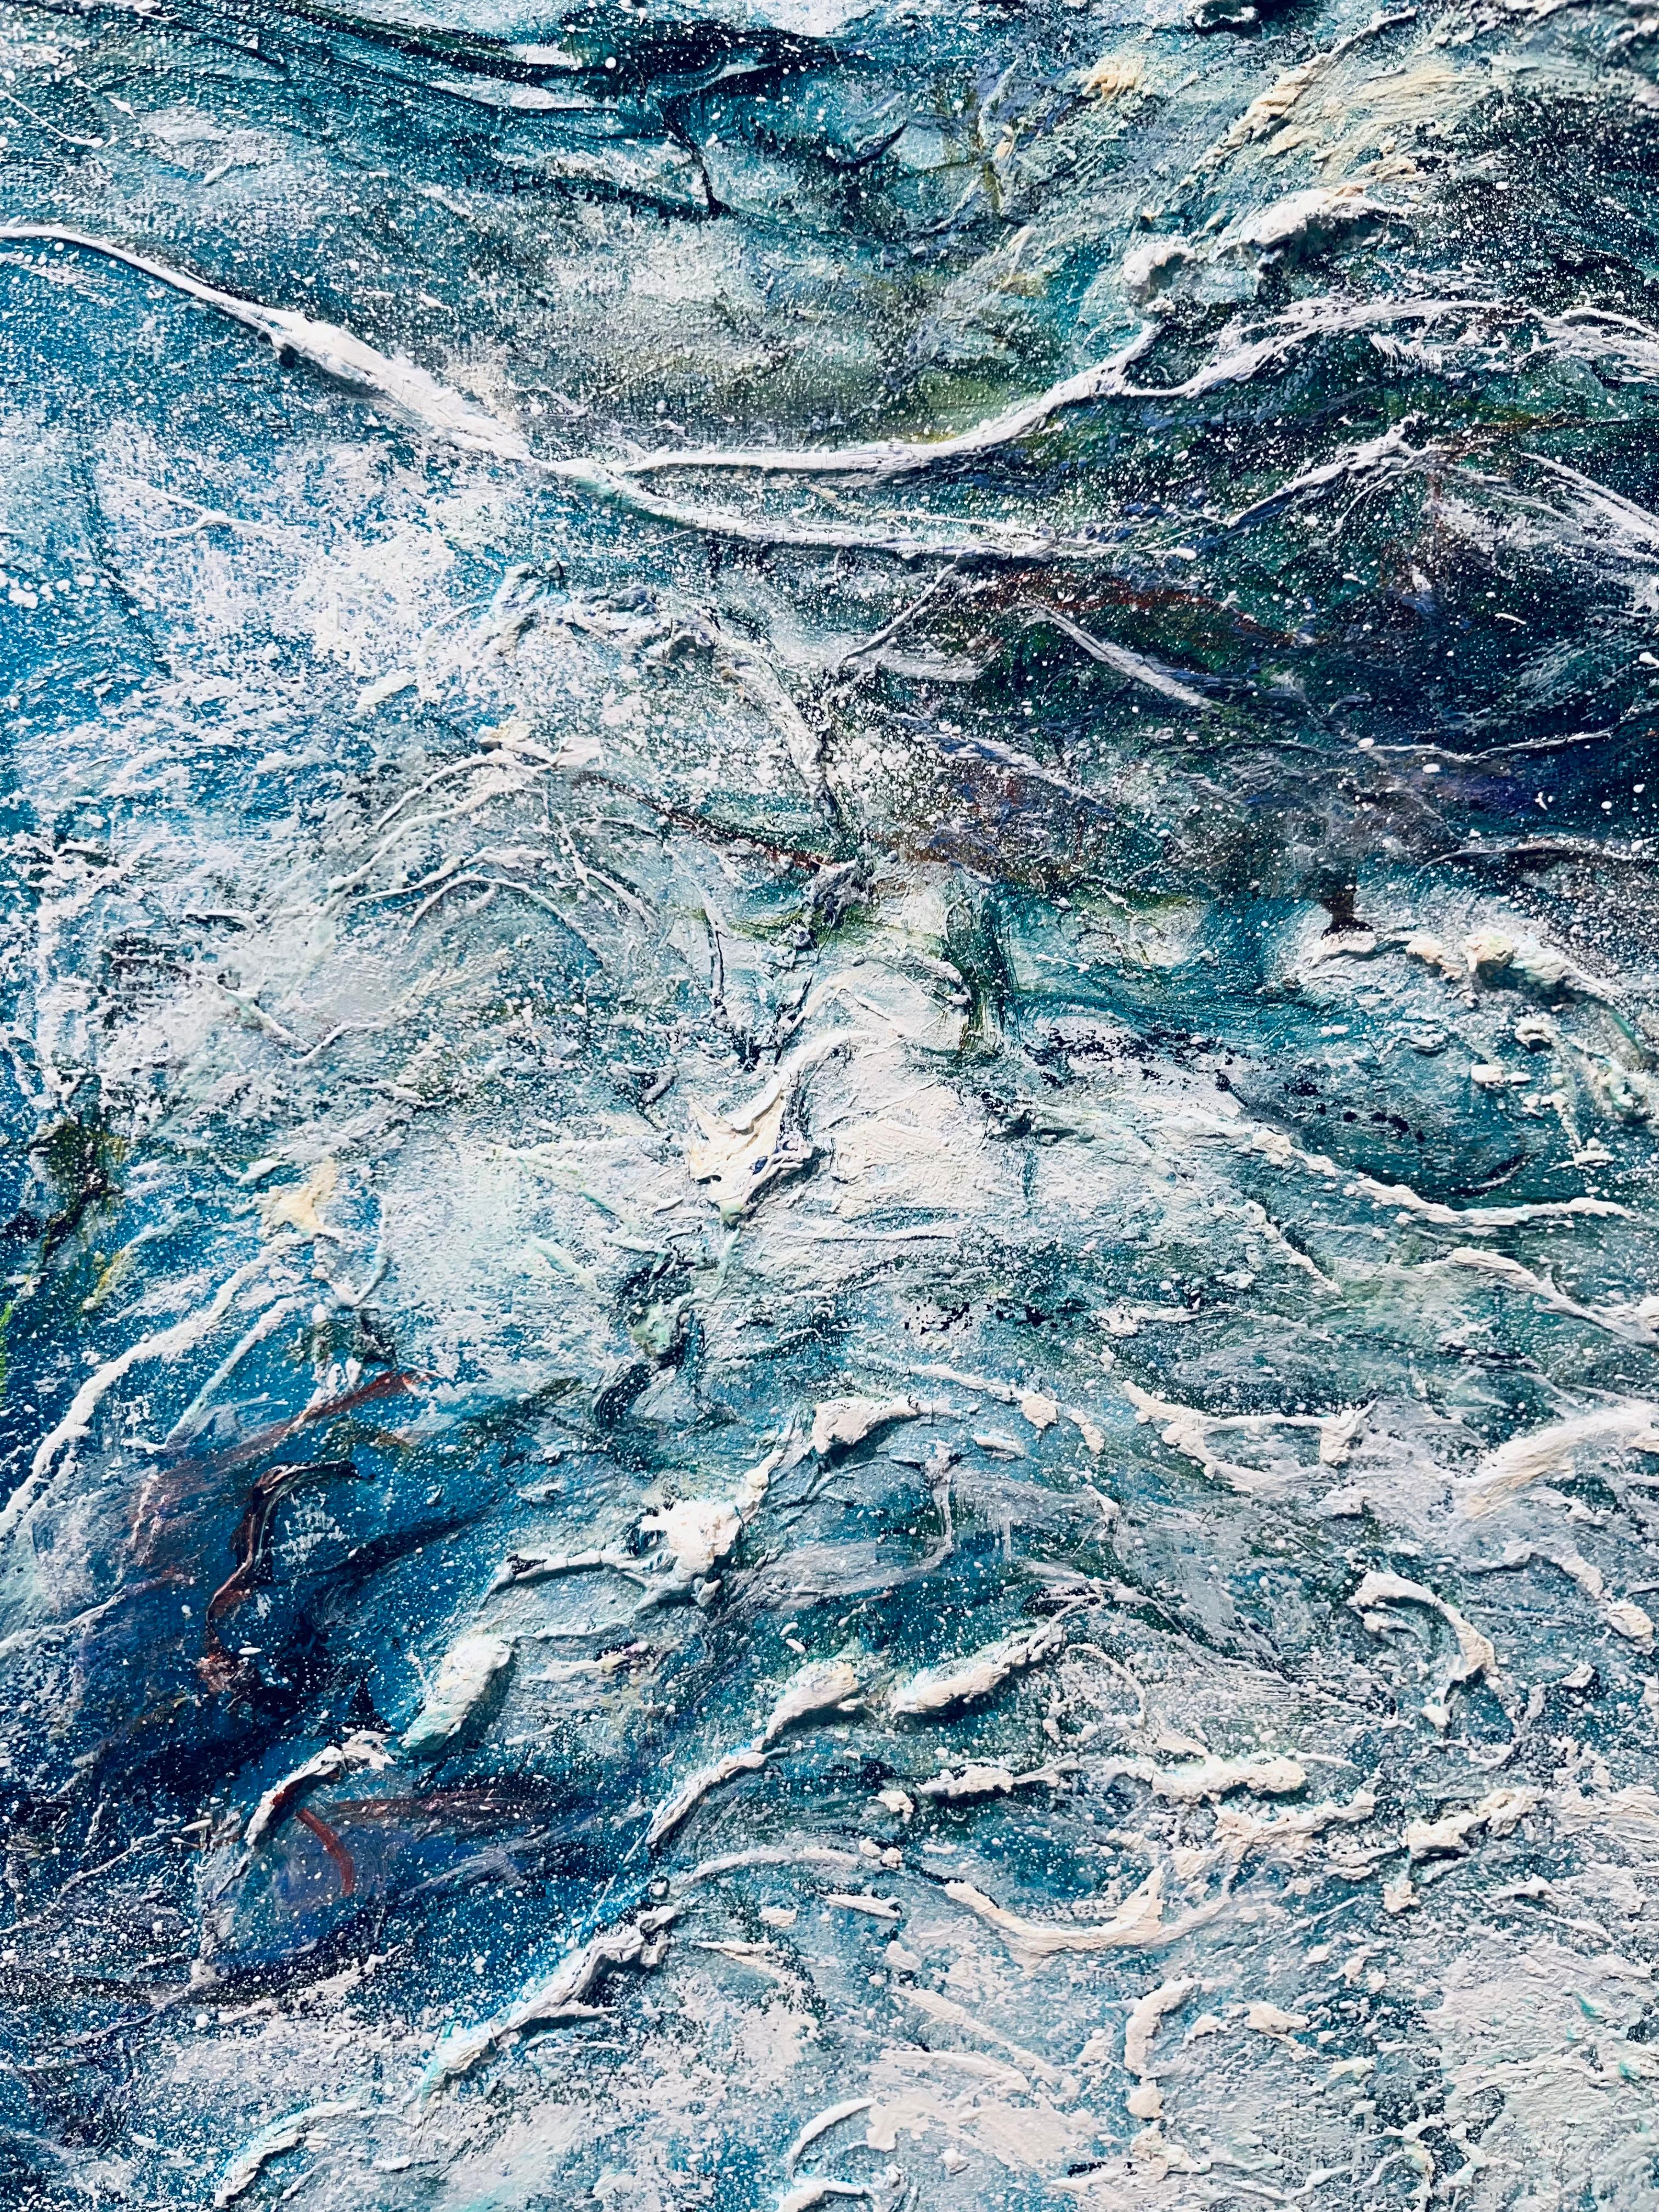 Kelp Web-originale moderne abstrakte Meereslandschaft-Ozean-Ölgemälde-zeitgenössische Kunst (Blau), Figurative Painting, von Nikki Baxendale